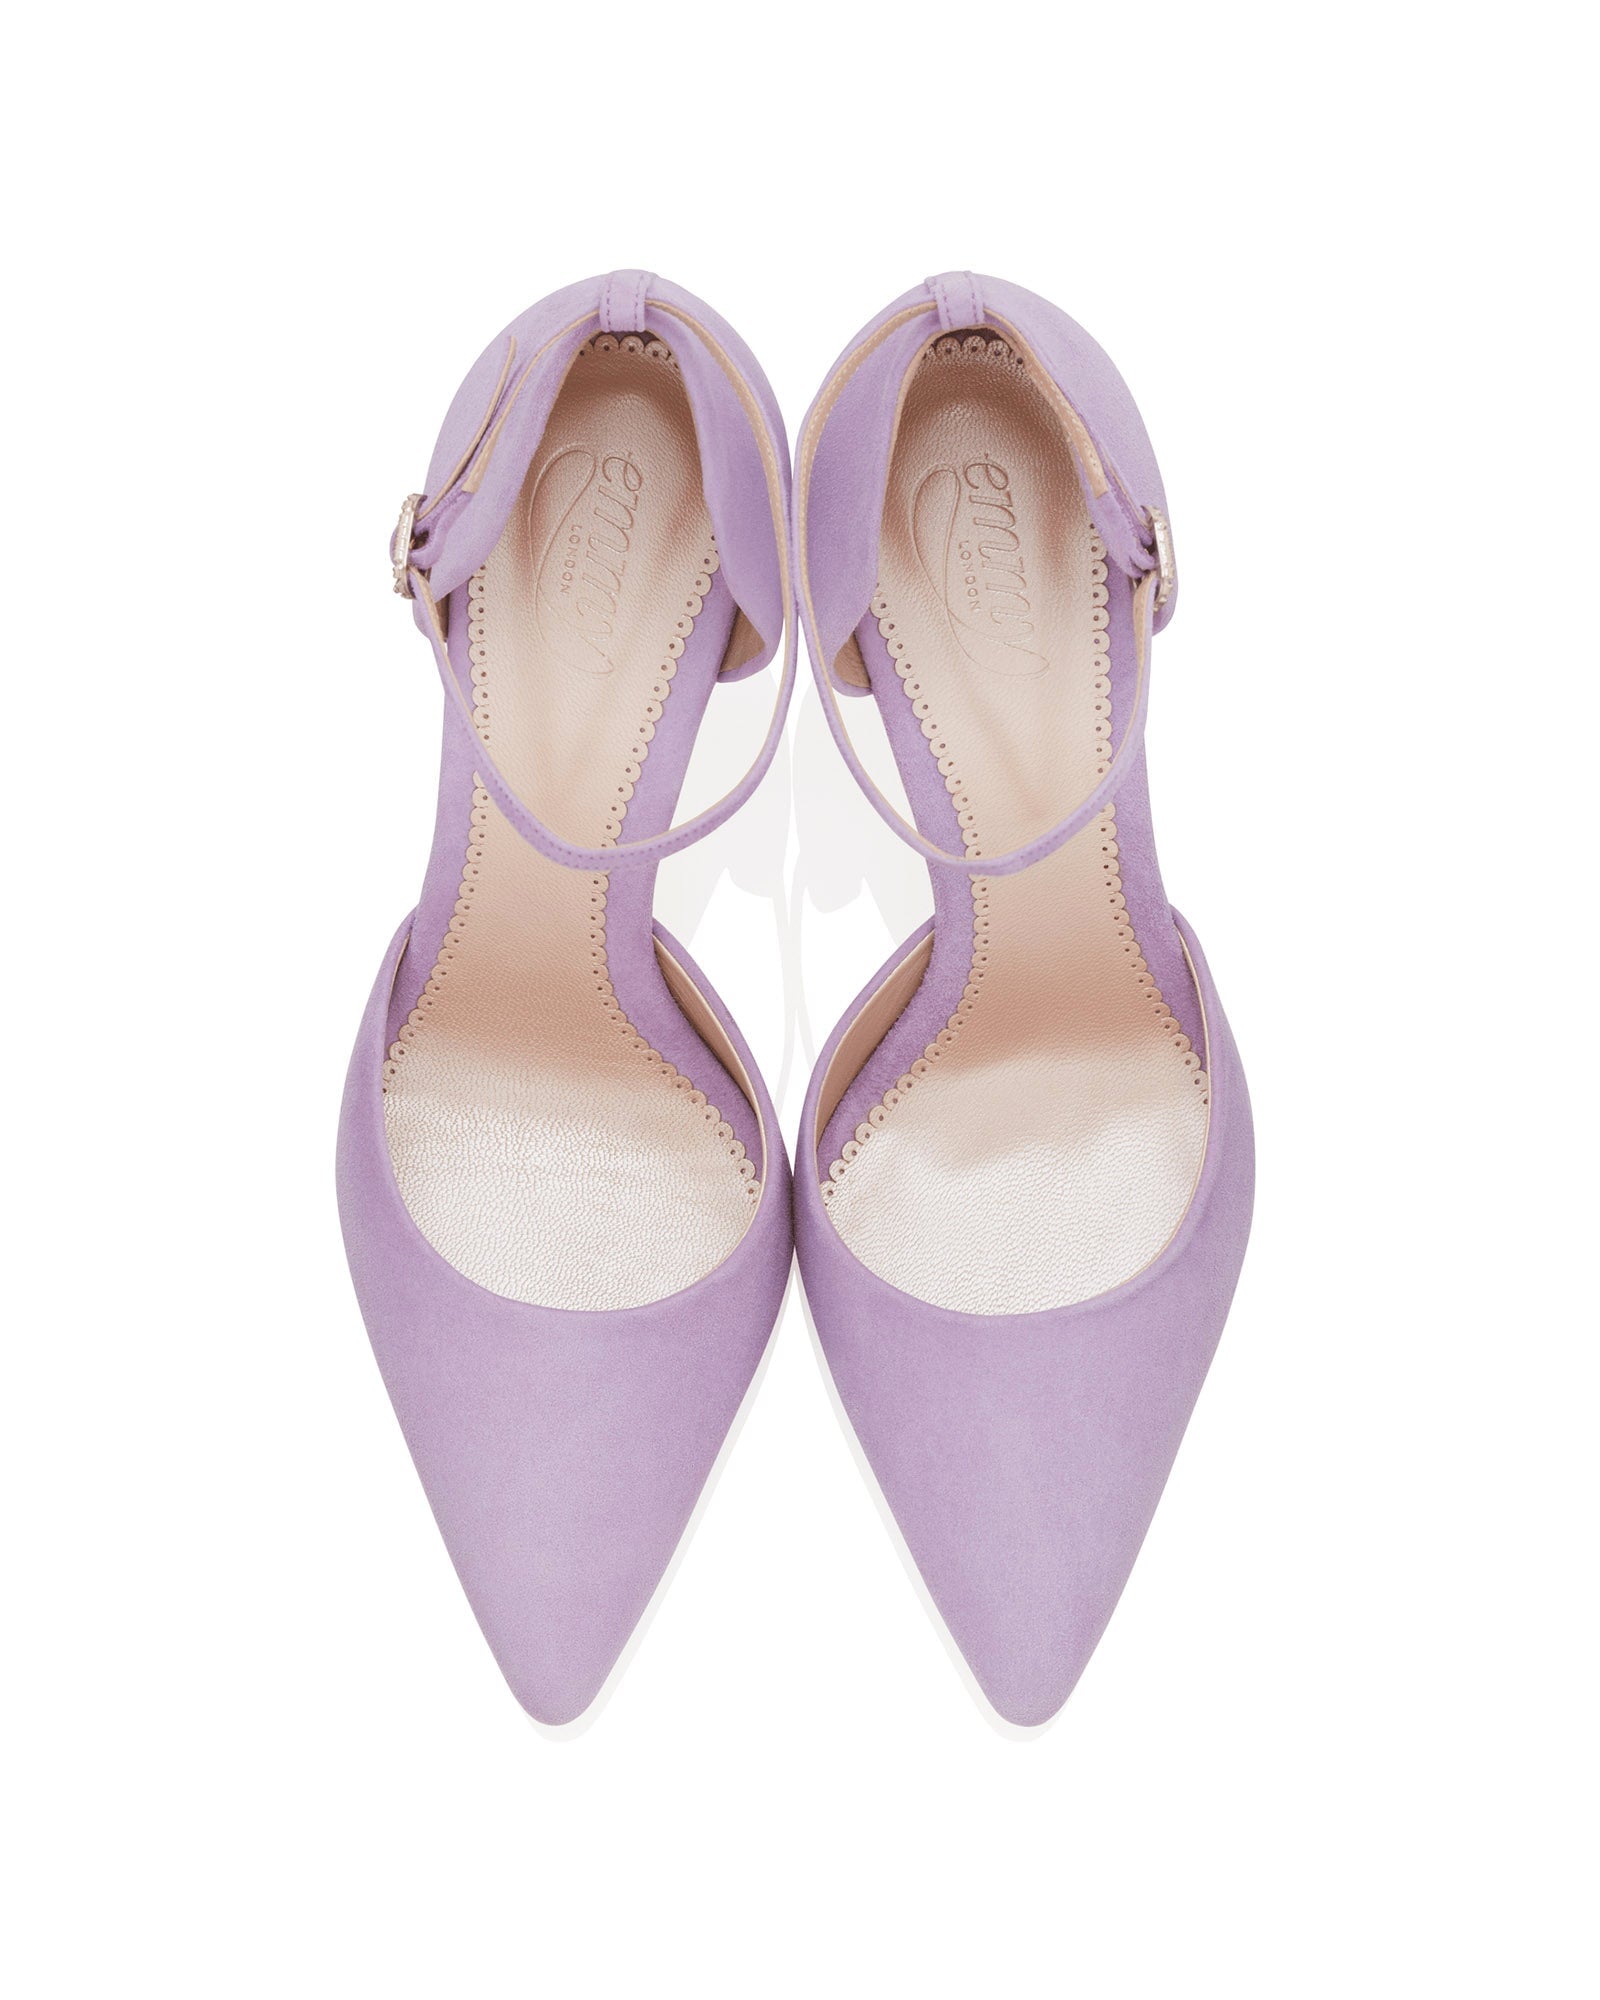 Lilac Comfy Strappy Block Heels | Tiesta Shoes – Tiesta Store